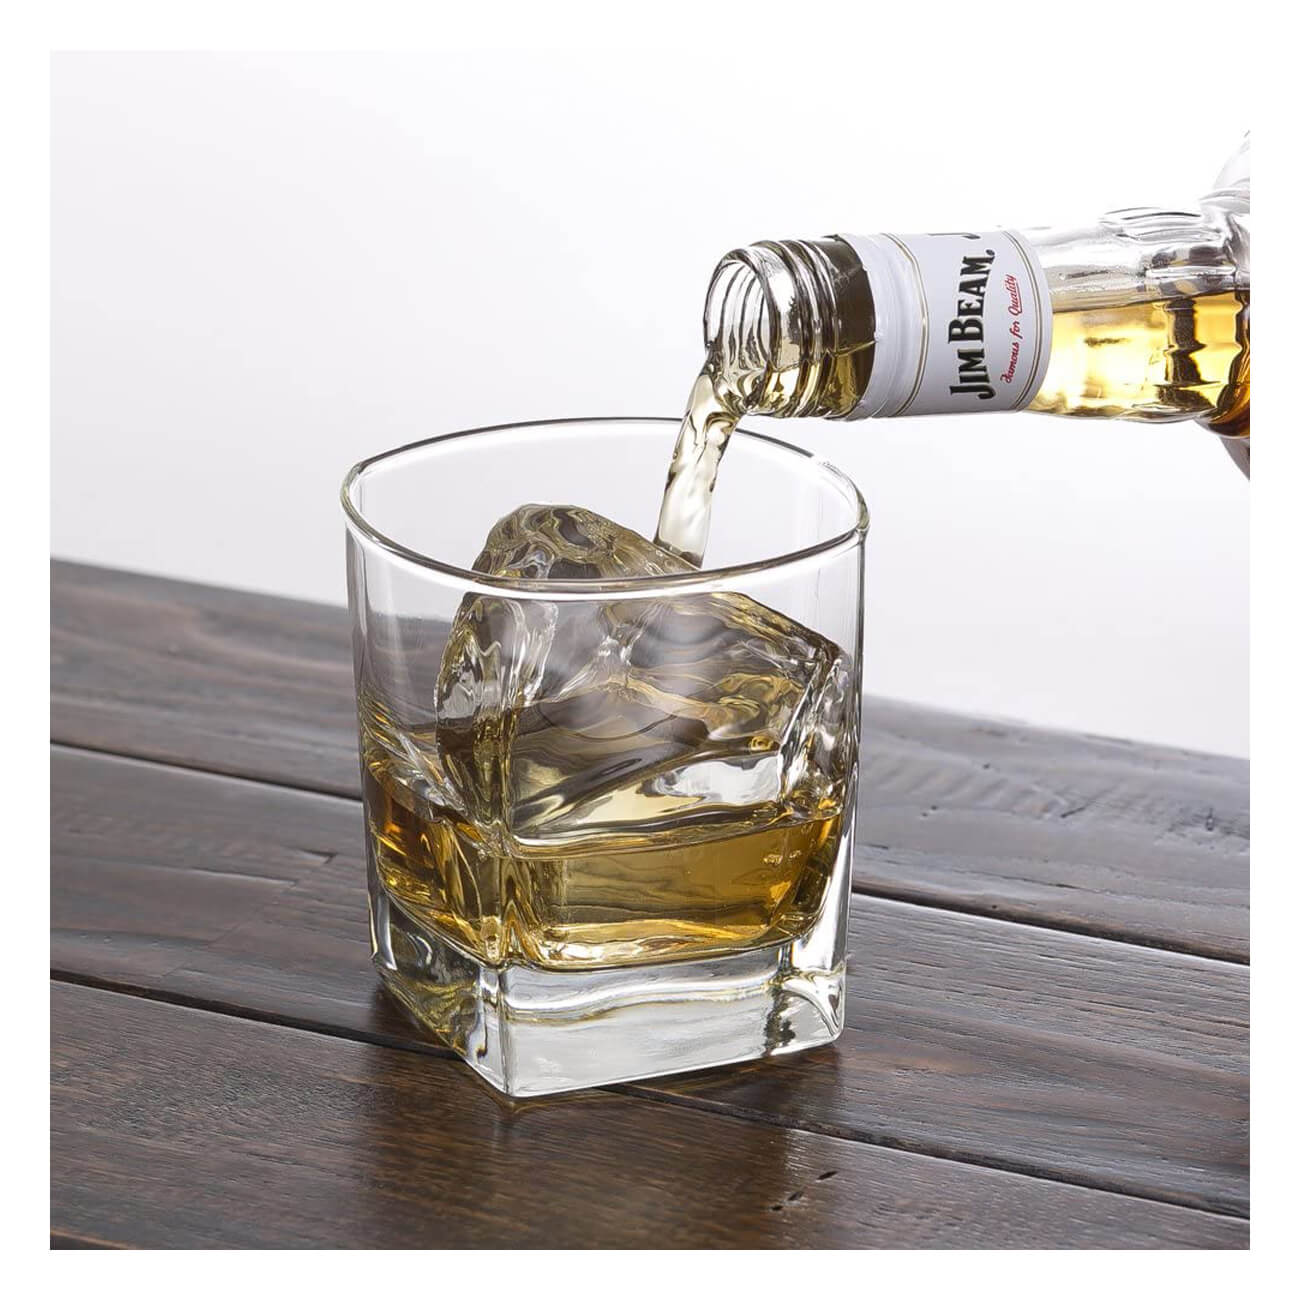 Whisky Bourbon Americano Jim Beam White 1L